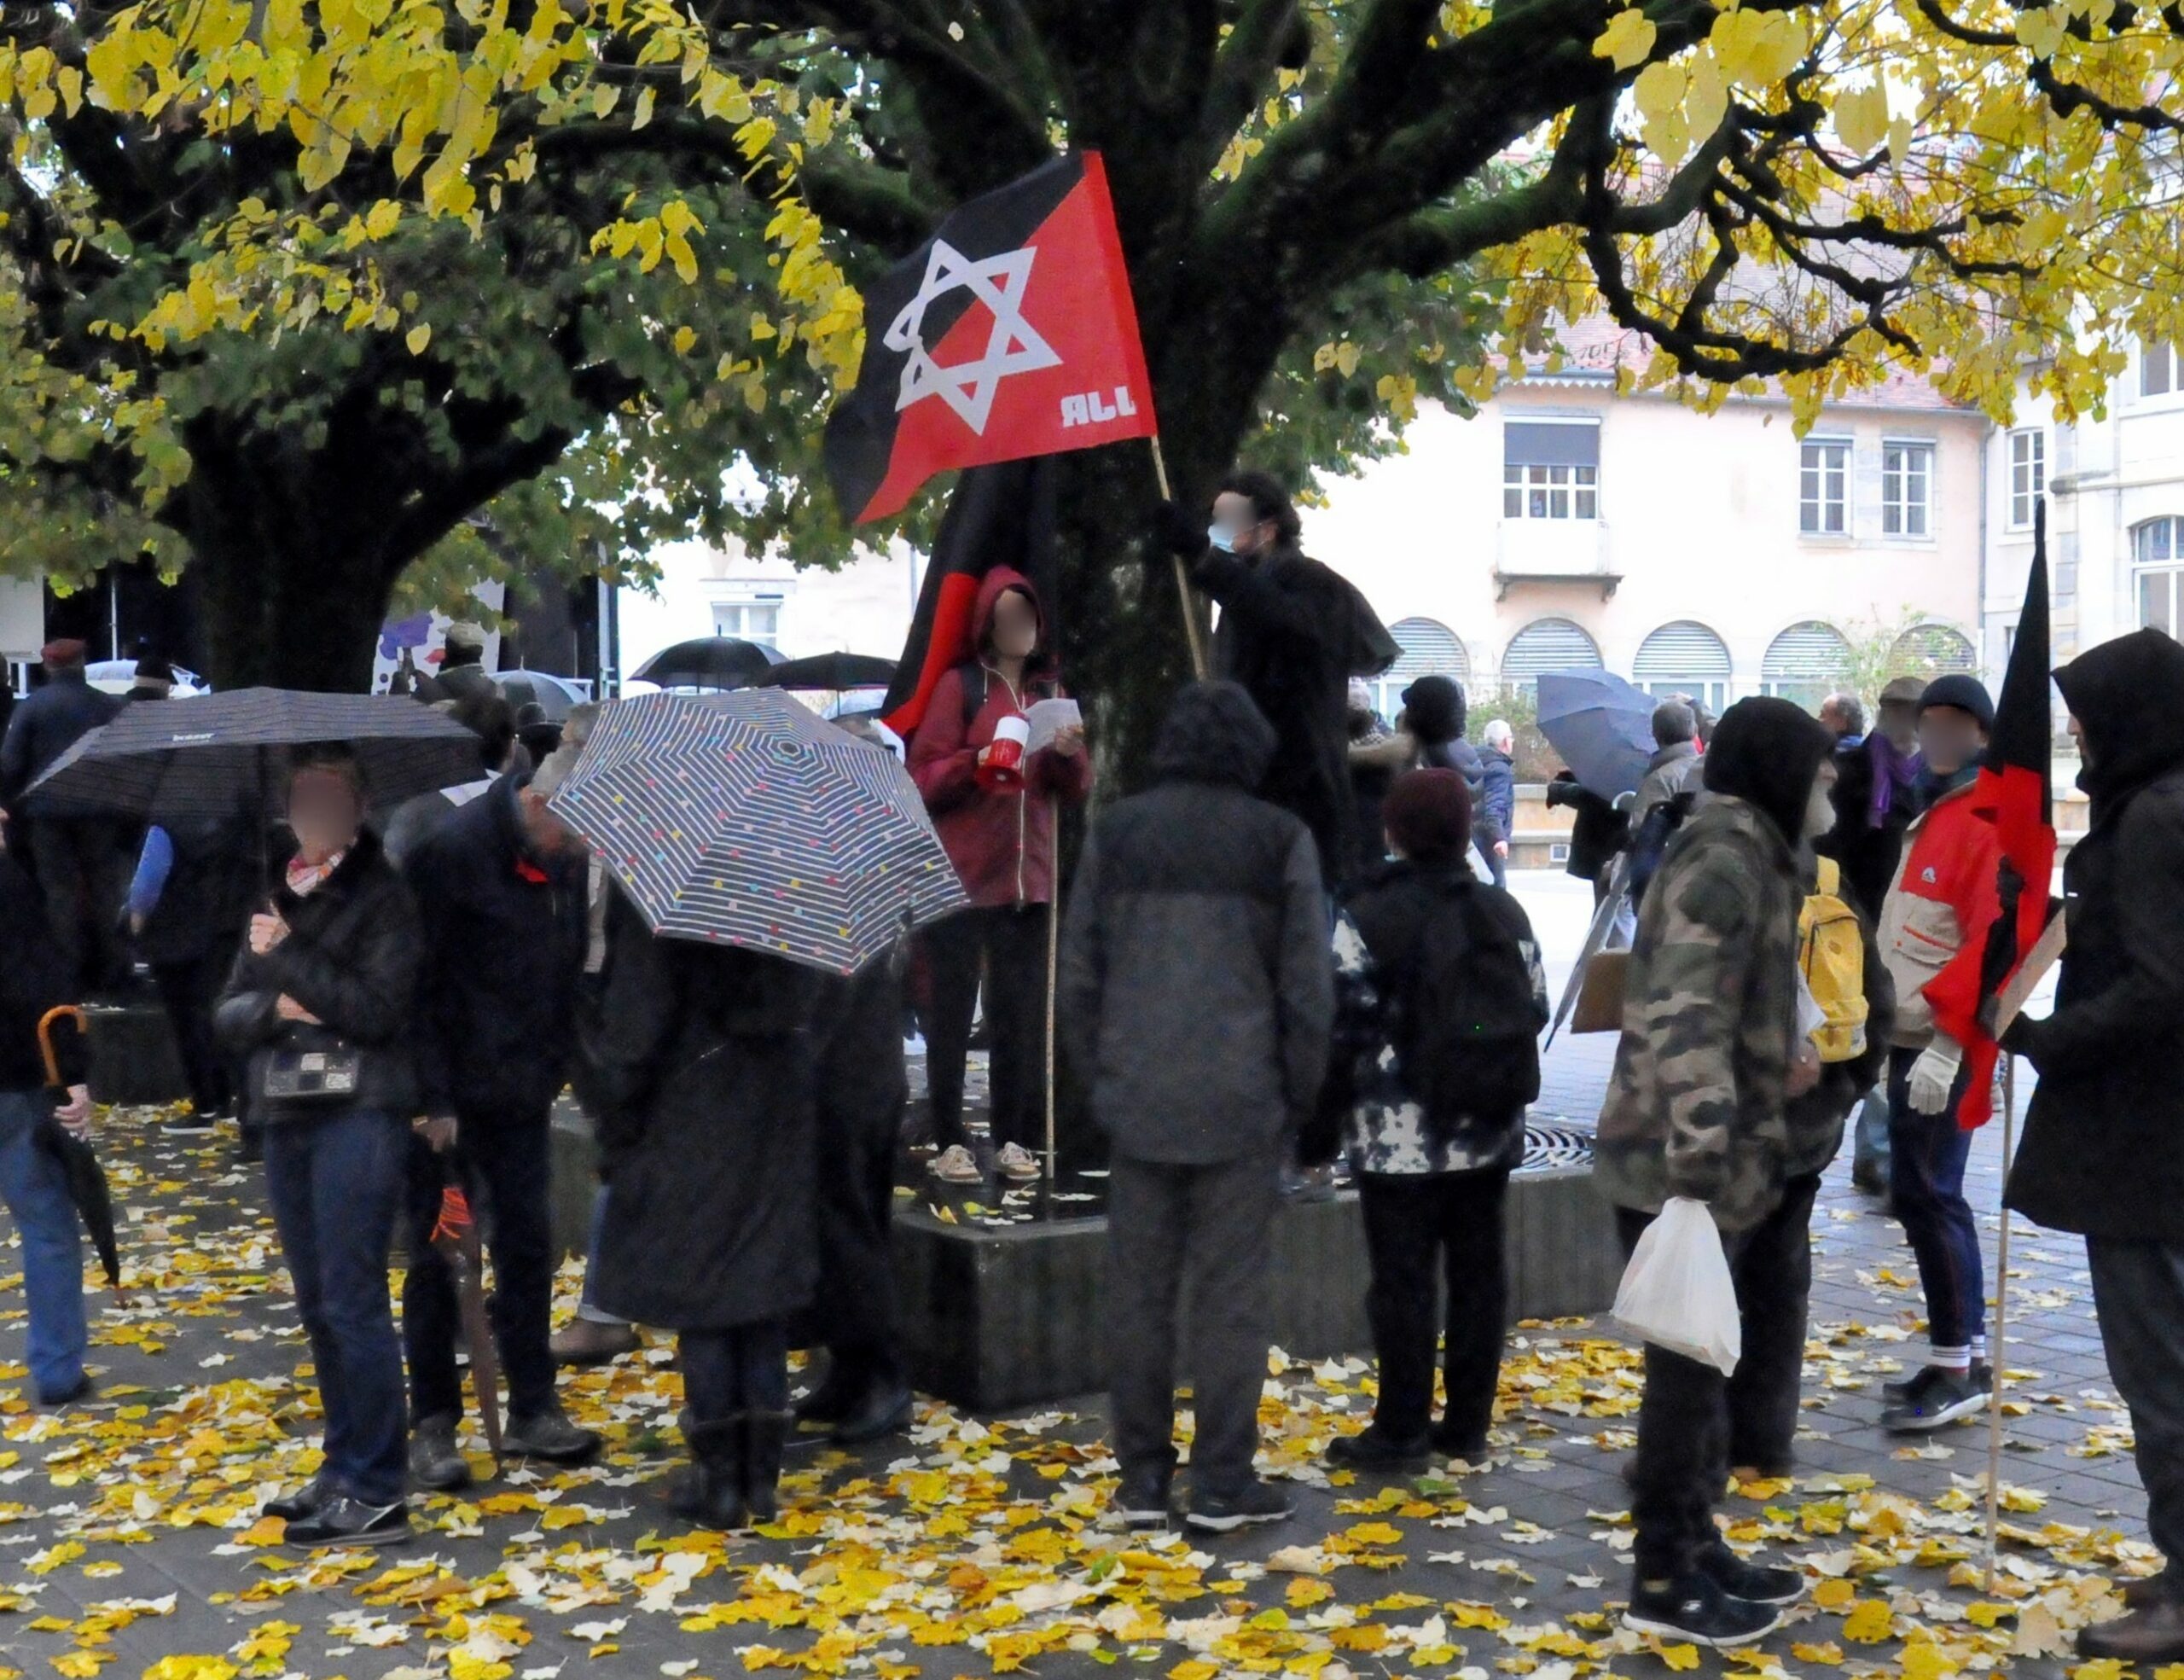 Une dizaine de Juifs Révolutionnaires participent à une marche contre l’antisémitisme, avec drapeau rouge et noir frappé de l’étoile de David.